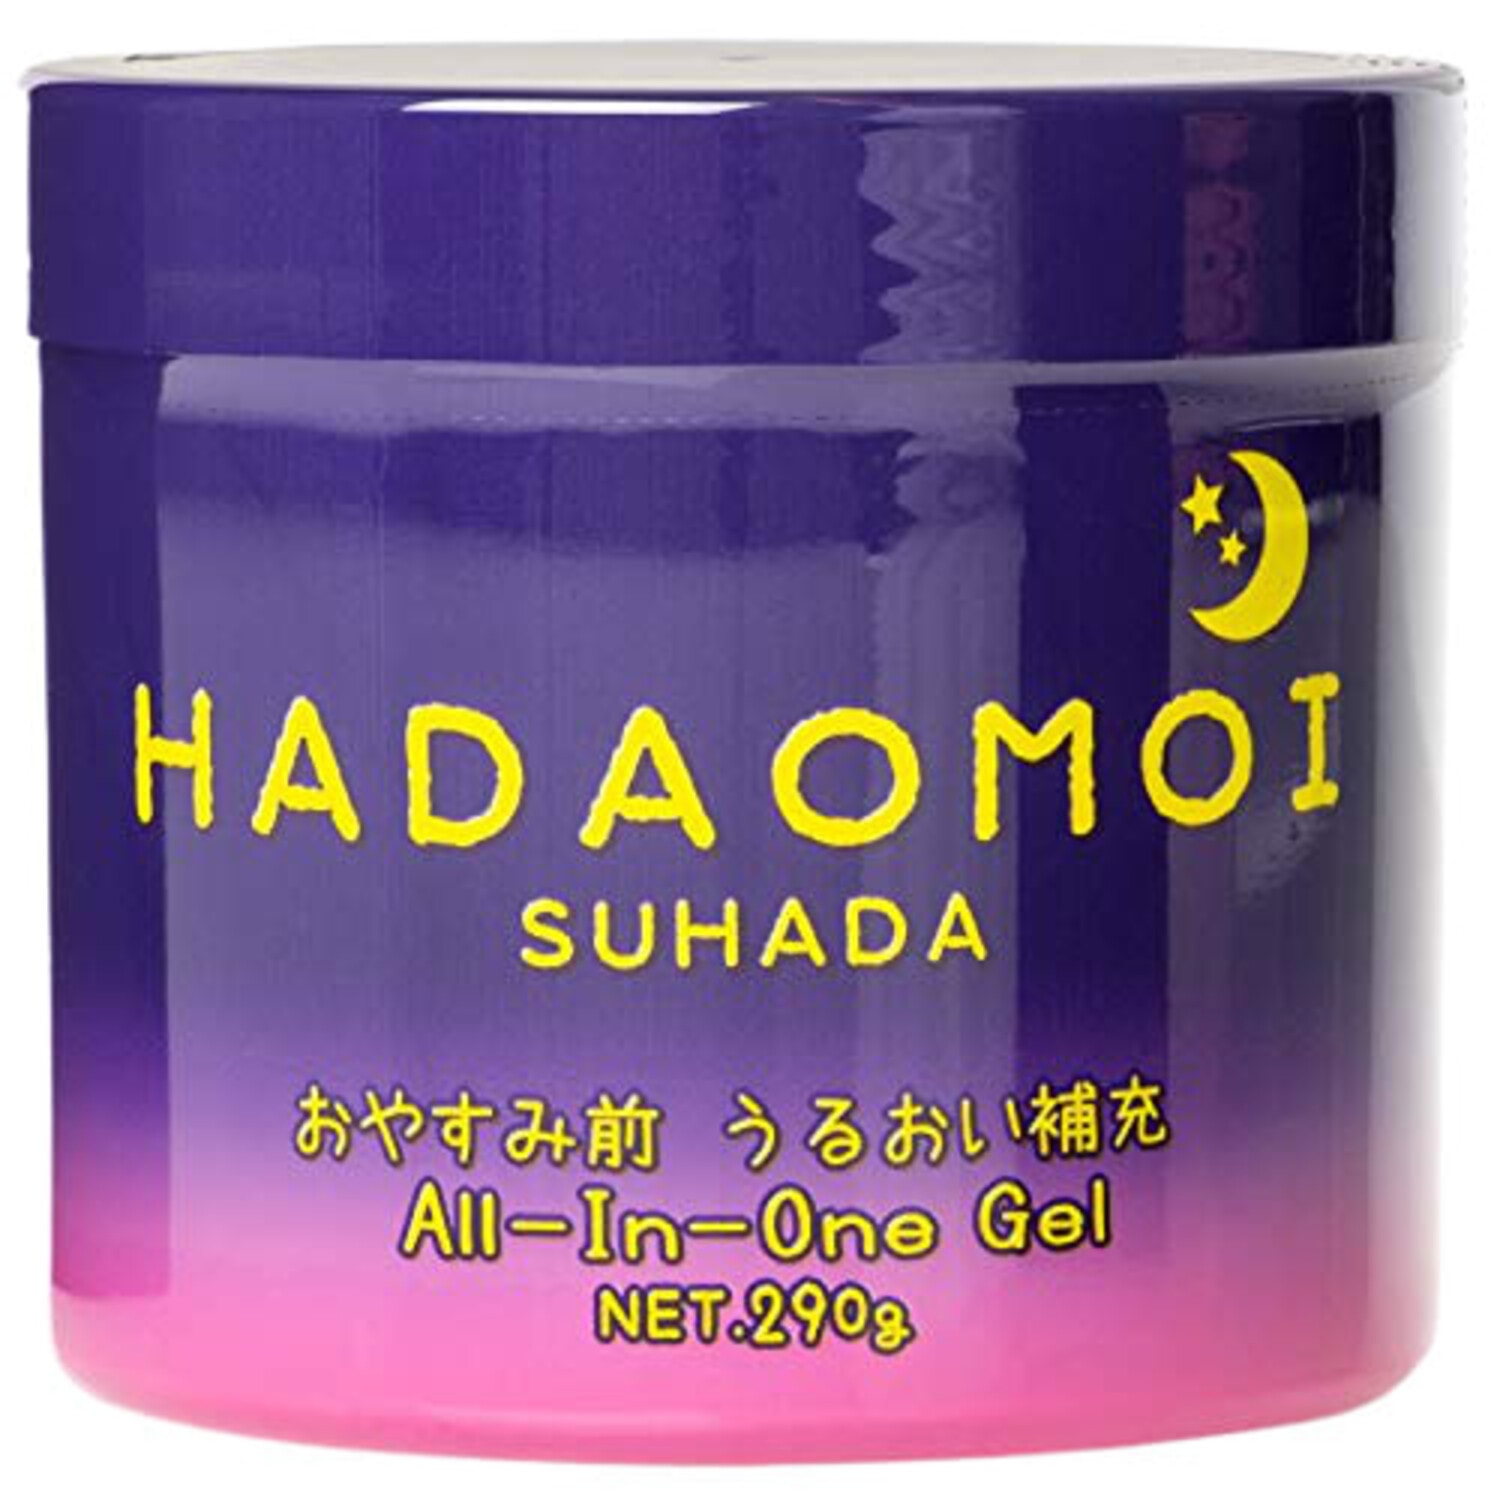 Akari "Hadaomoi Suhada" Ночной увлажняющий и питательный гель для лица и тела, с концентратом стволовых клеток, 290 г. / 222278 (1Т)